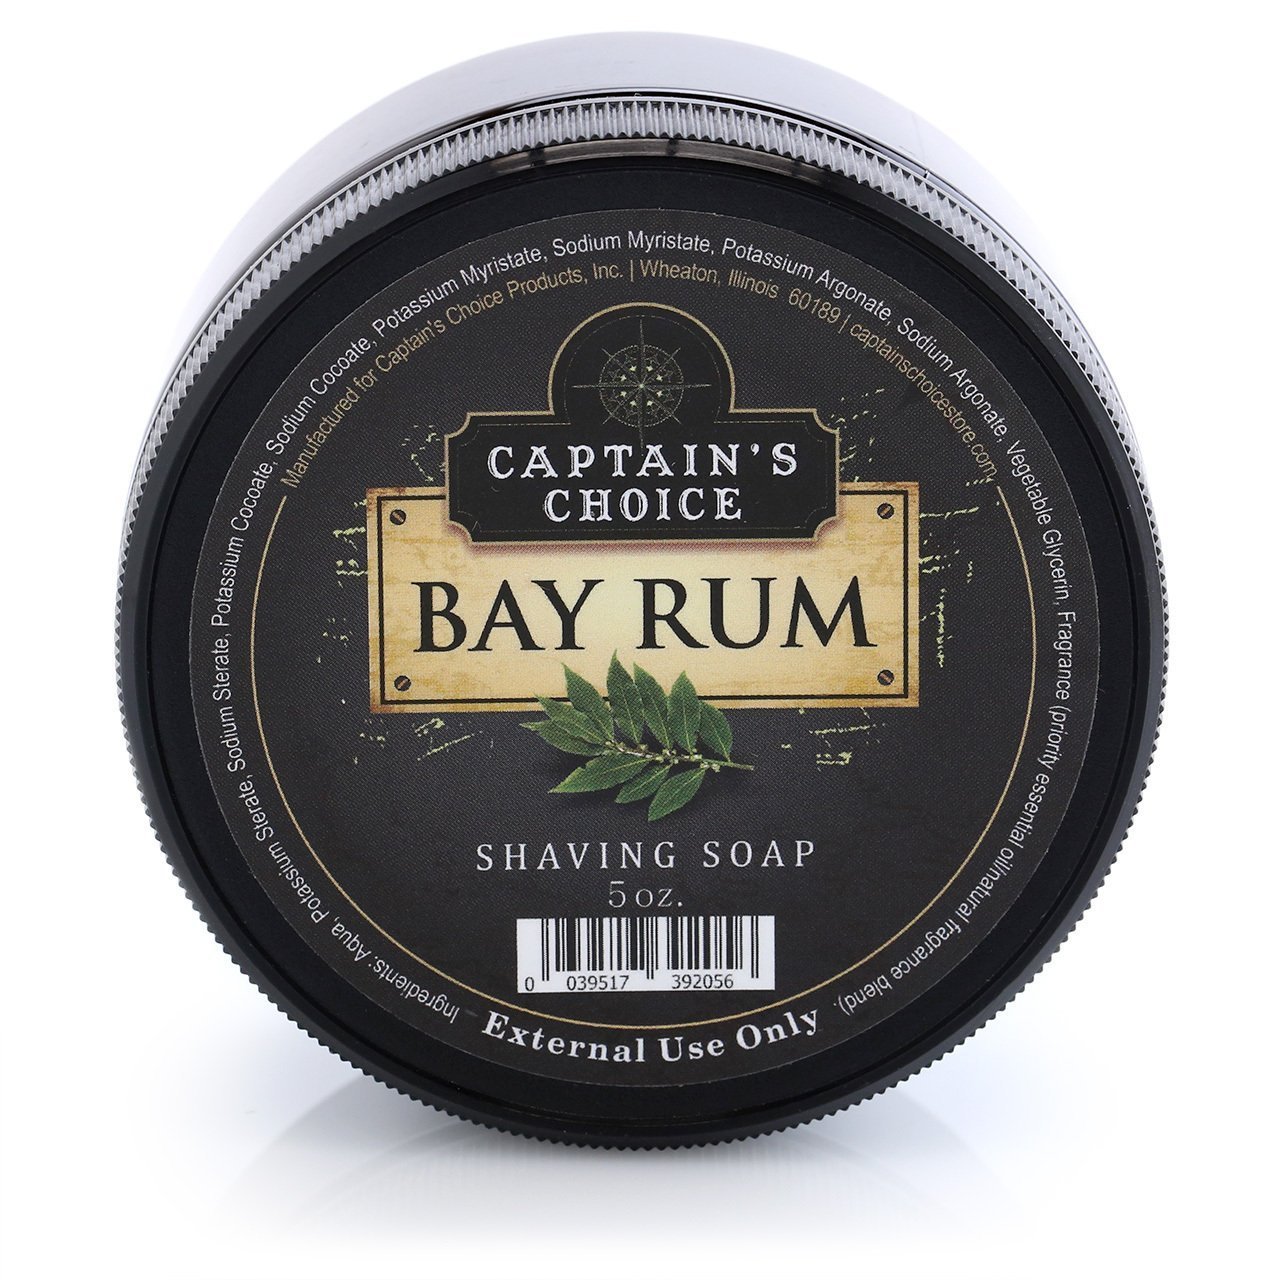 Captain's Choice Bay Rum Shaving Soap 5 oz